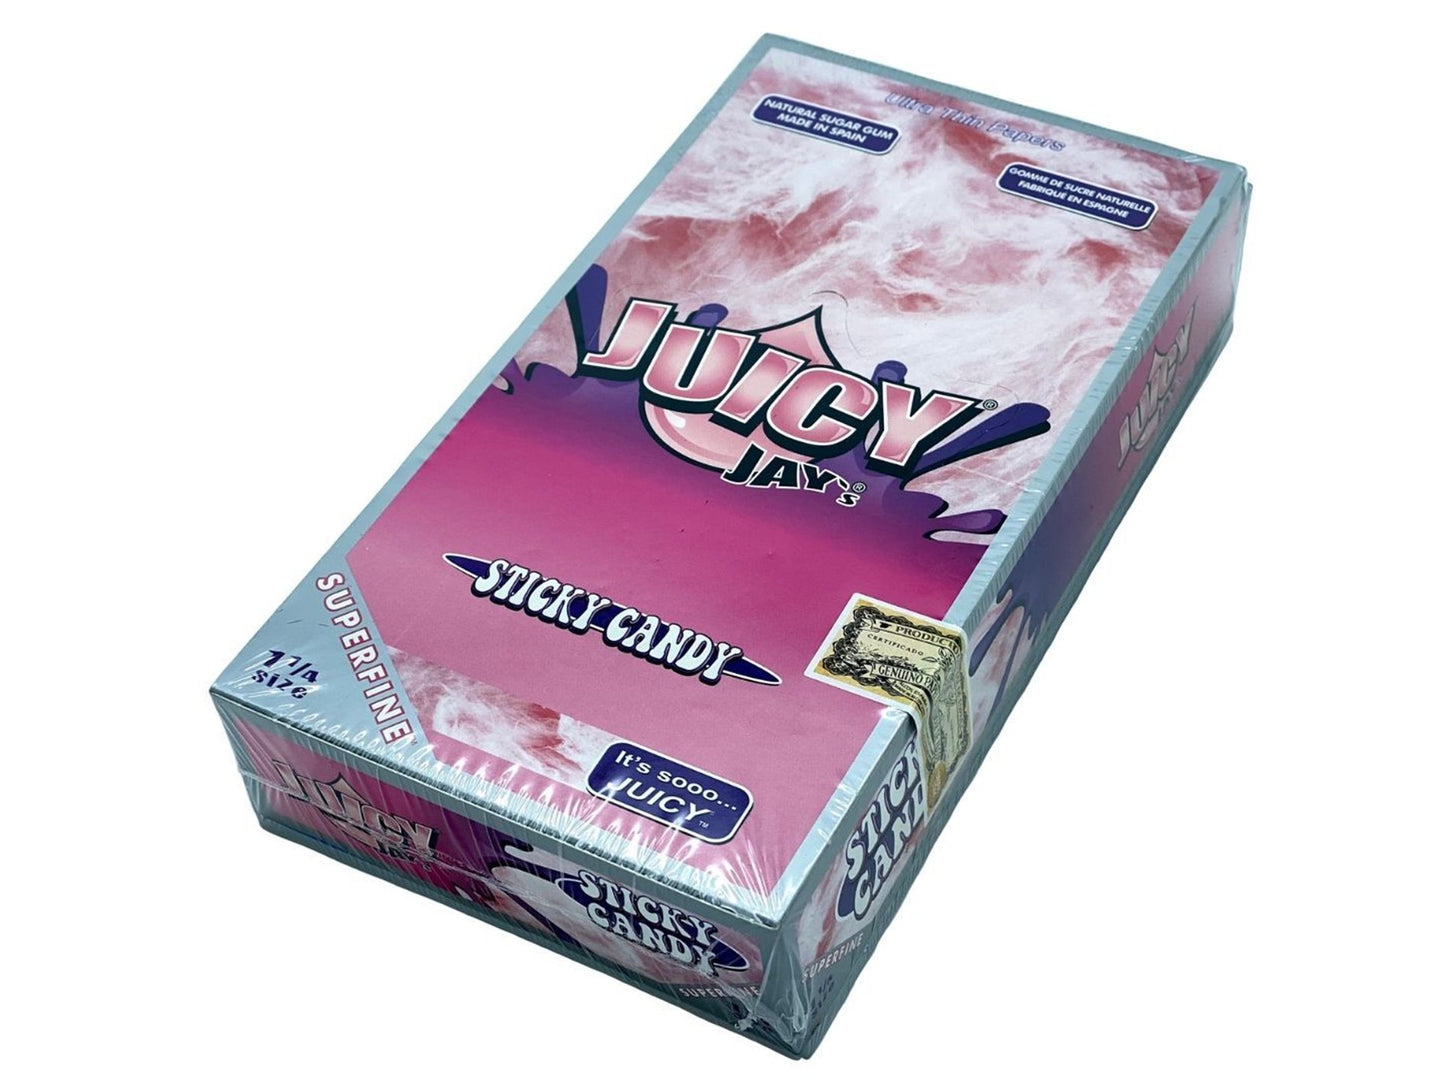 JUICY JAYS 1¼ Superfine Flavoured Papers - 24 Pack Box - VIR Wholesale